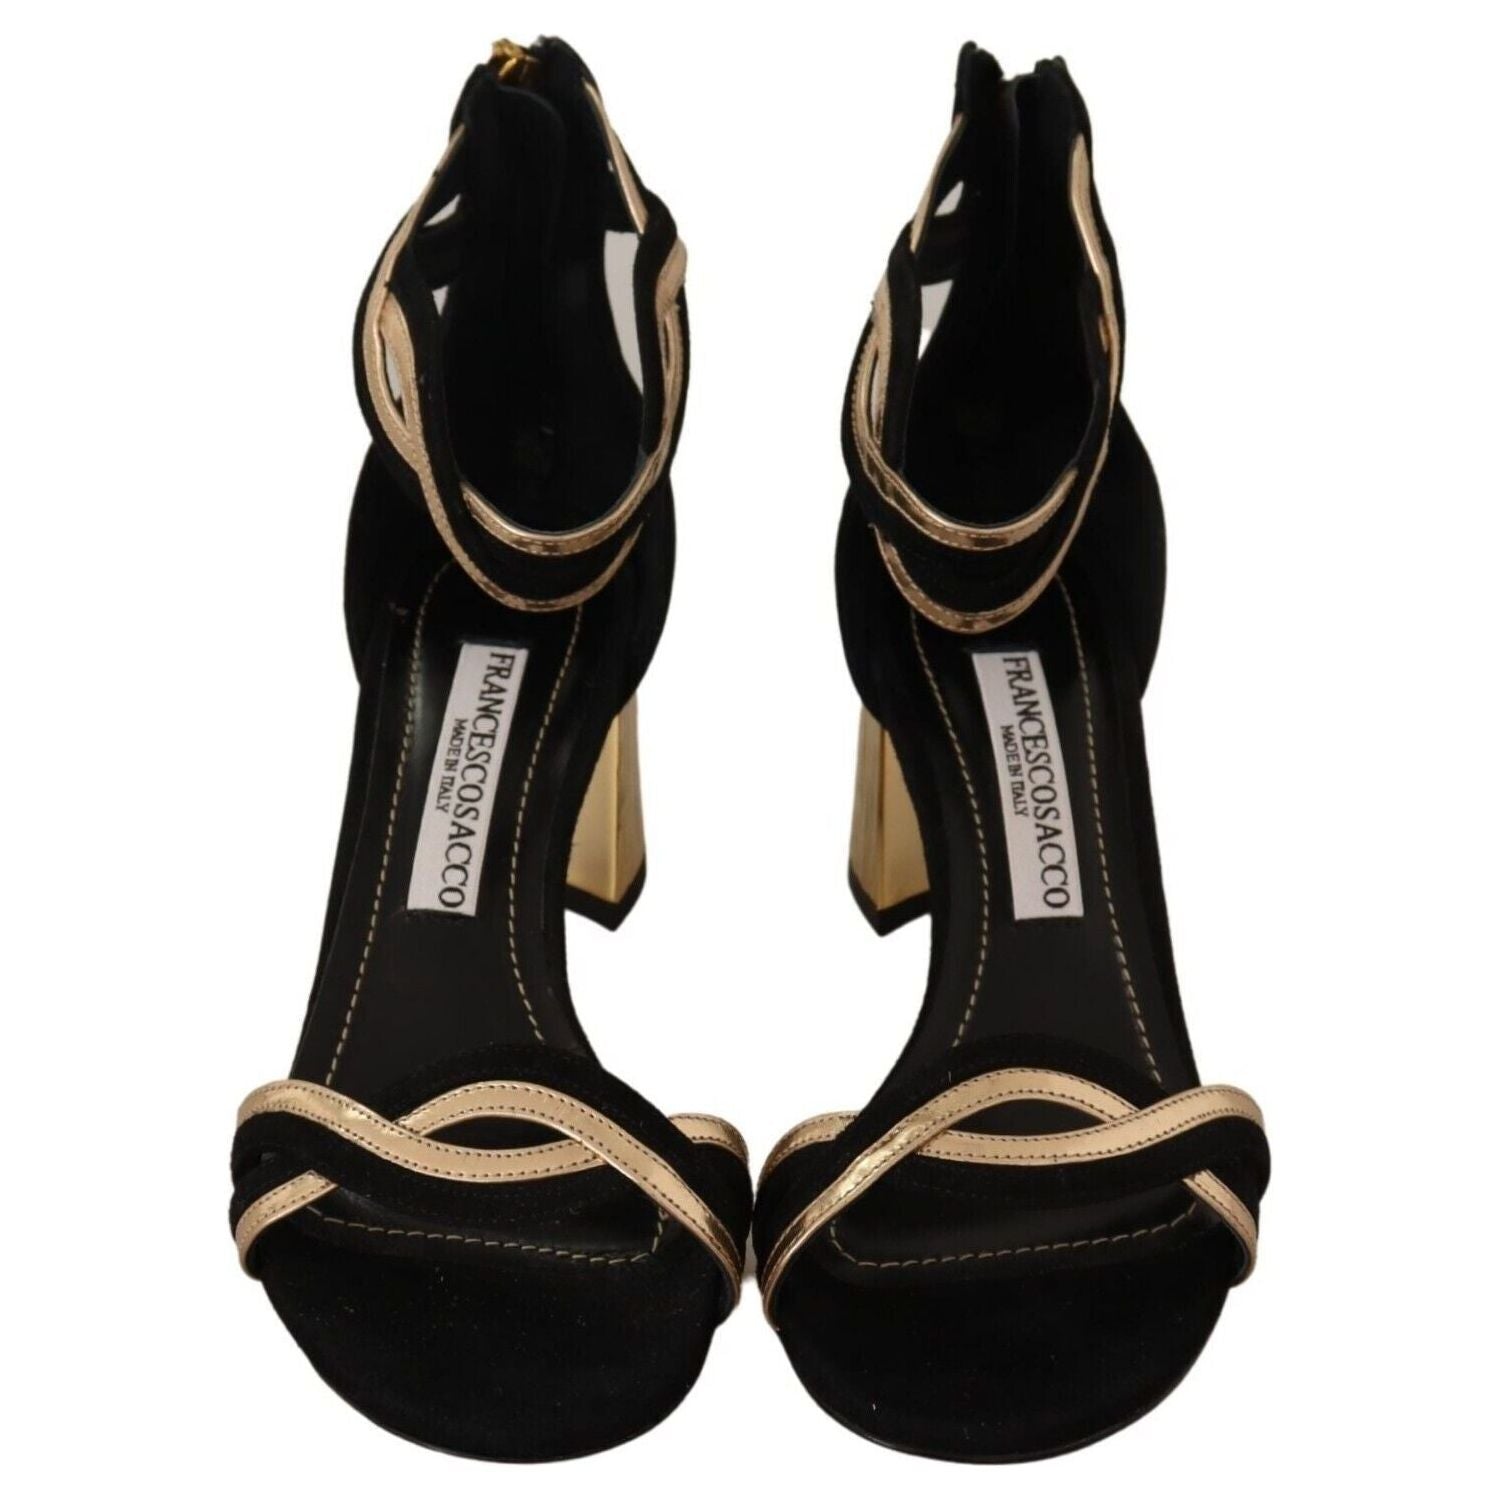 FRANCESCO SACCO | Black Gold Leather Suede Ankle Strap Heels Shoes | McRichard Designer Brands